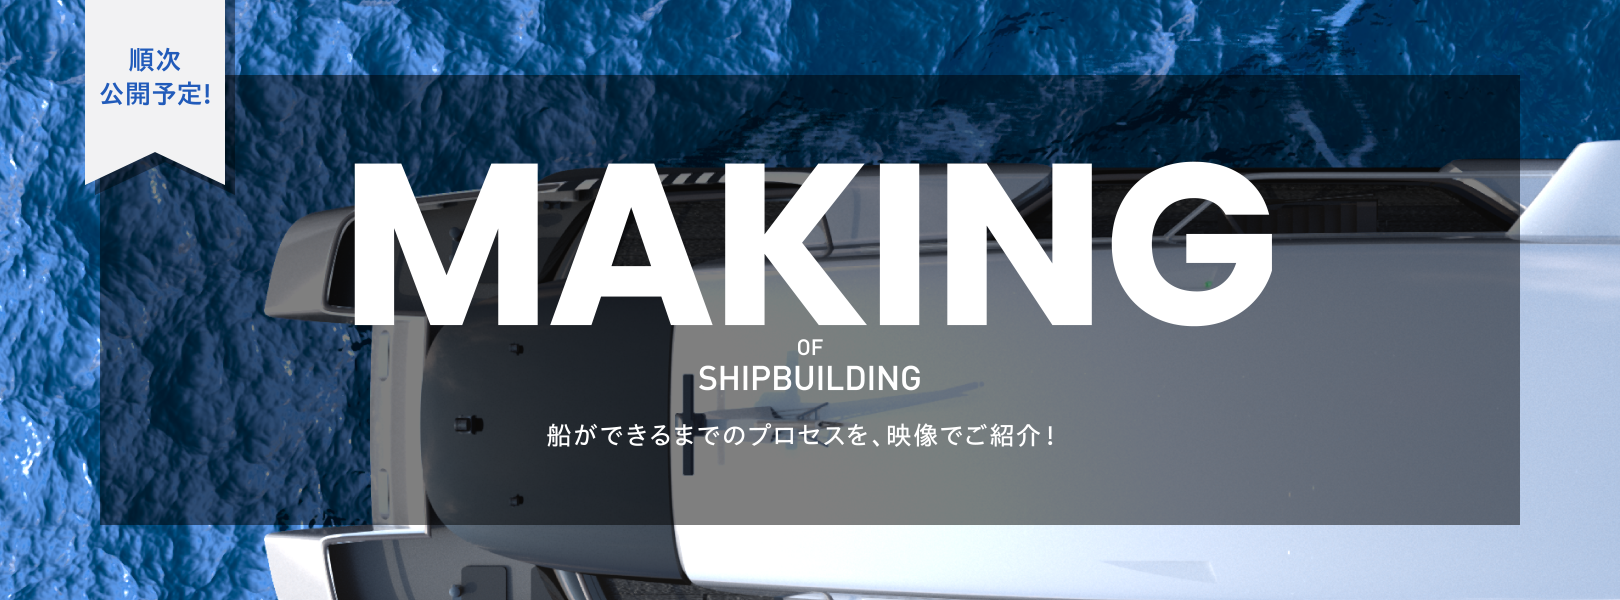 順次 公開予定! MAKING OF SHIPBULDING 船ができるまでのプロセスを、映像でご紹介！